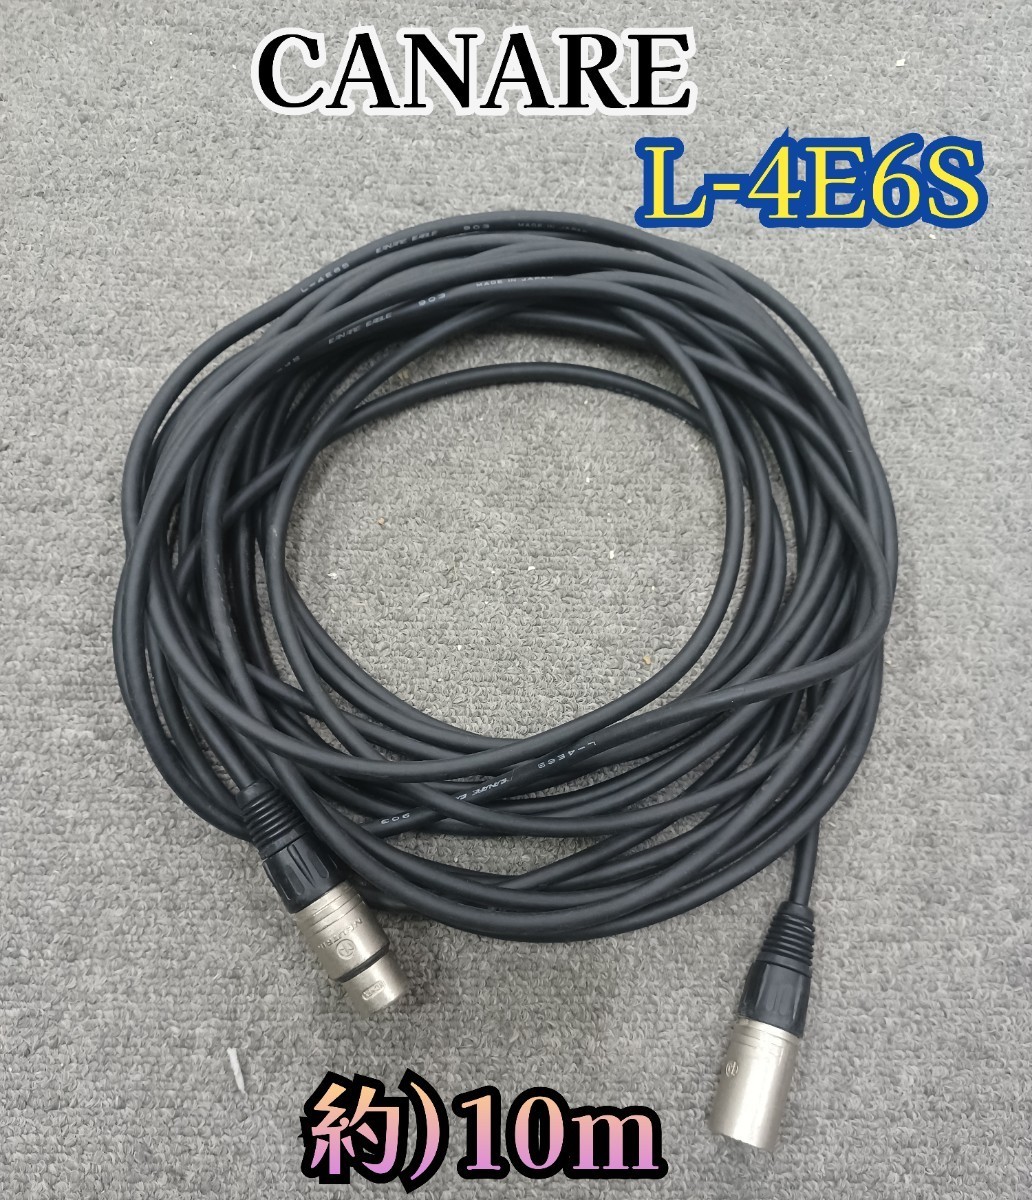  скала ③-2) CANARE L-4E6S 005 микрофонный кабель примерно 10m Canare кабель профессиональный звук для бизнеса машинное оборудование Mai шт. запись 240208(L-1-4